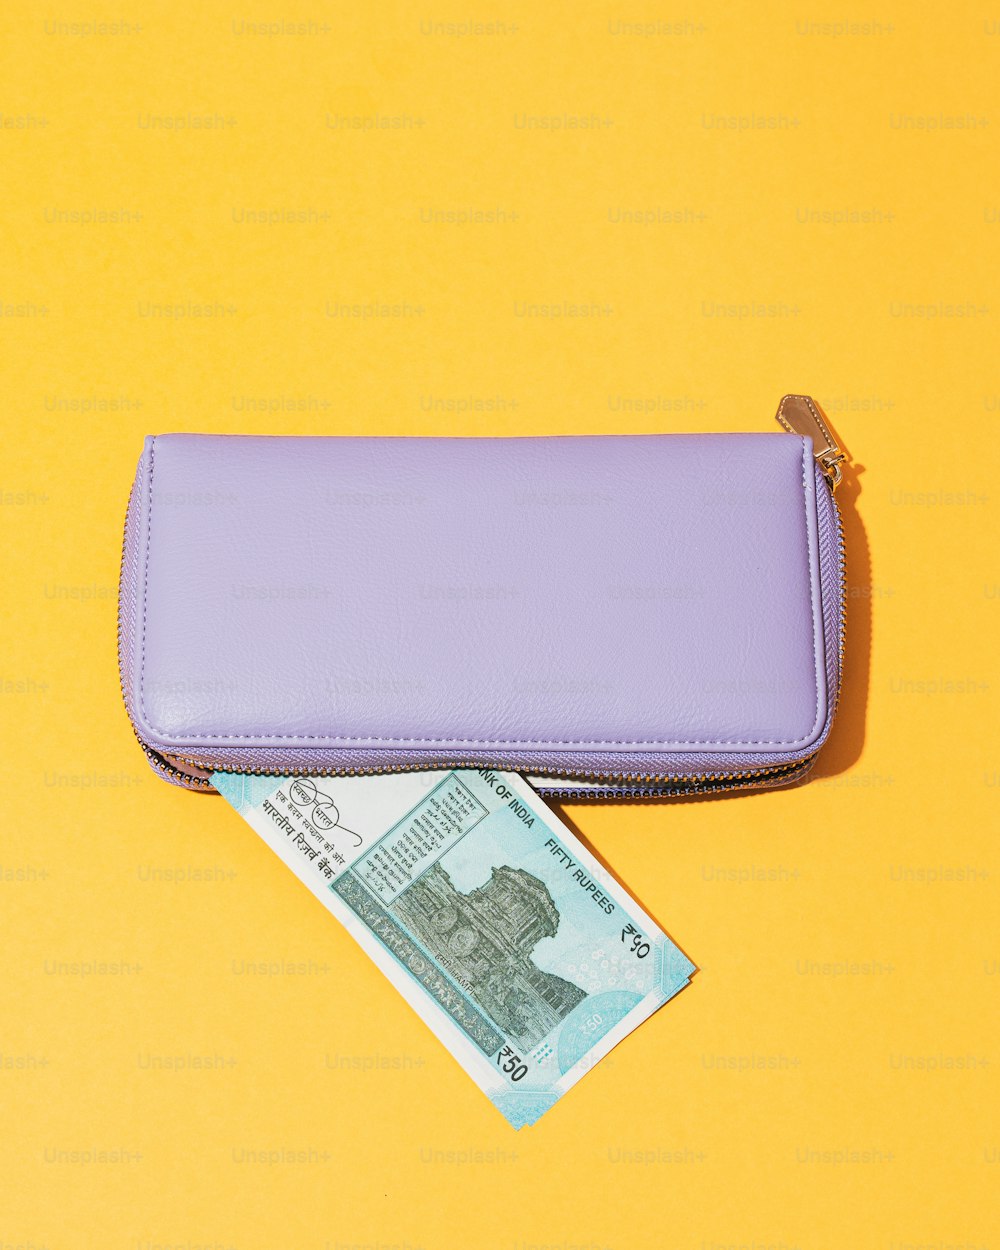 Una billetera púrpura sentada encima de una mesa amarilla